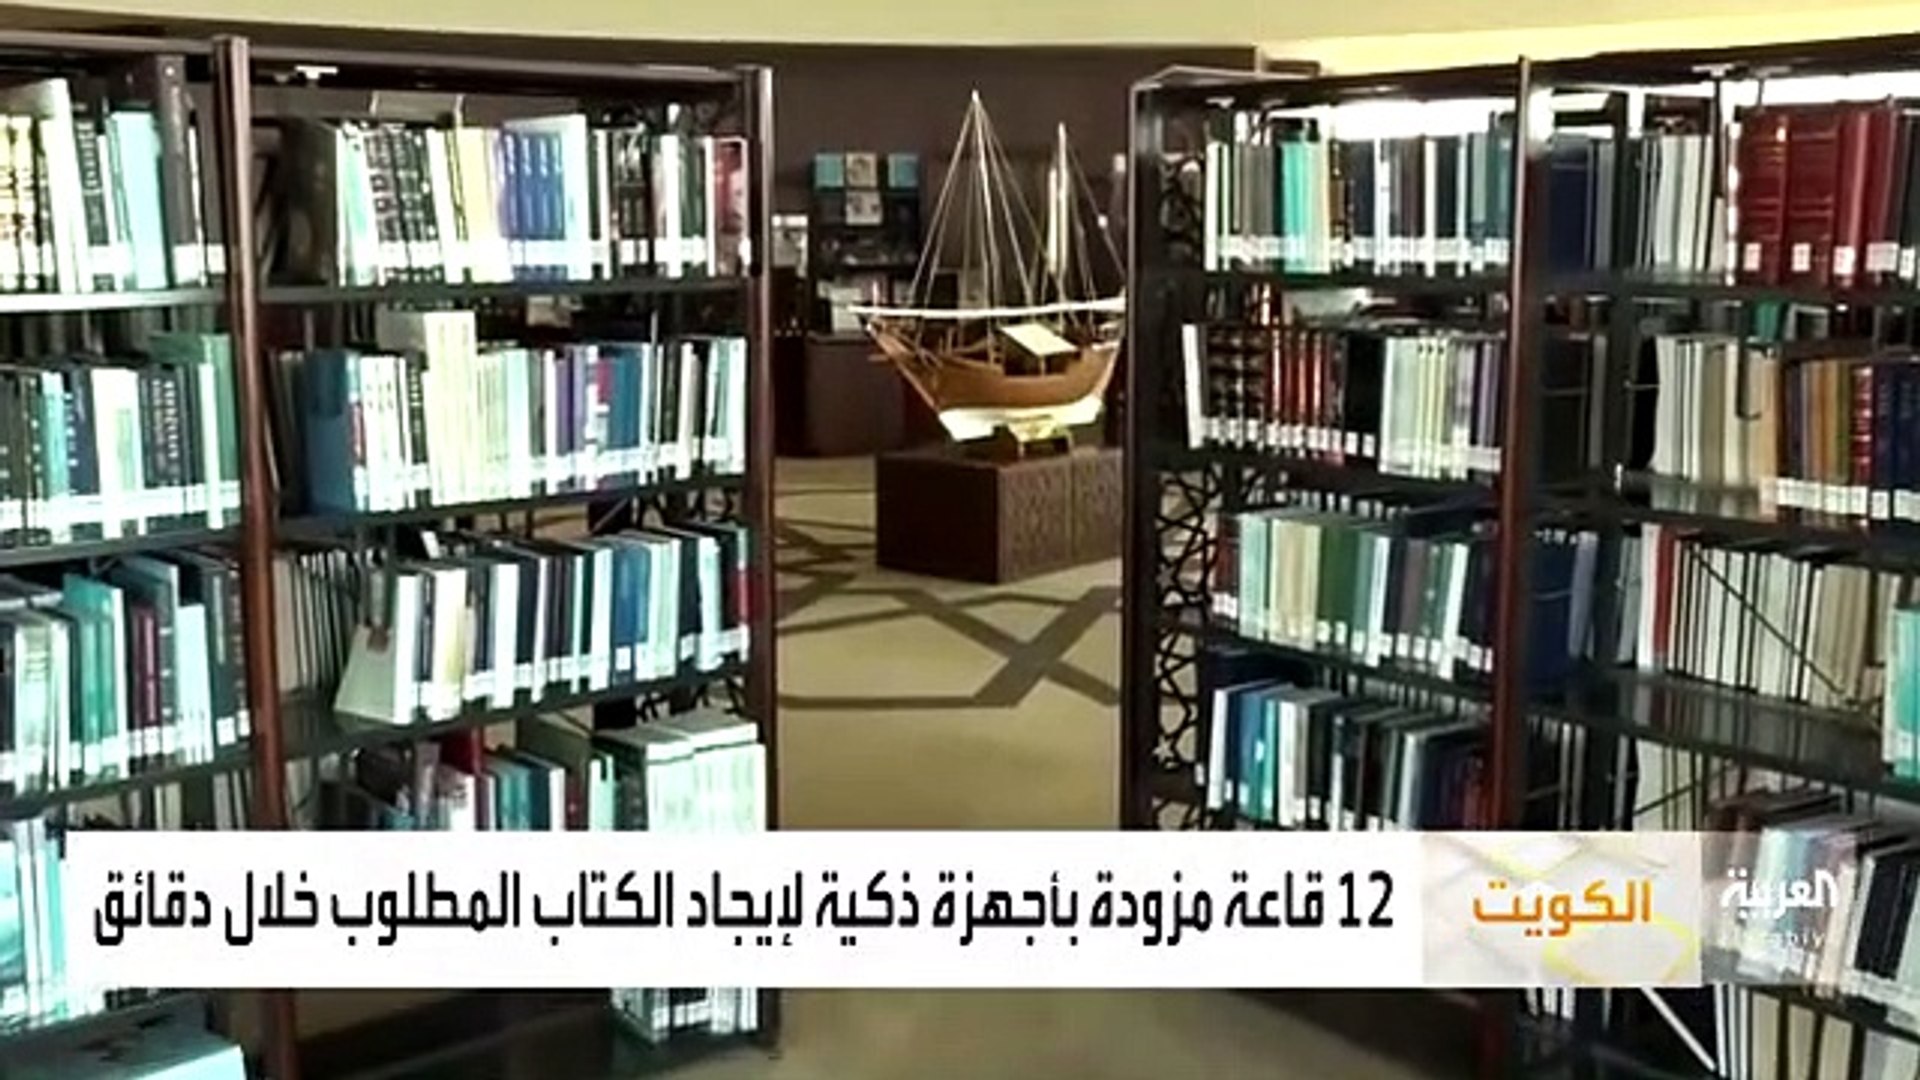 بالفيديو مكتبة الكويت الوطنية توصل القراء لأكثر من 200 ألف كتاب - فيديو  Dailymotion